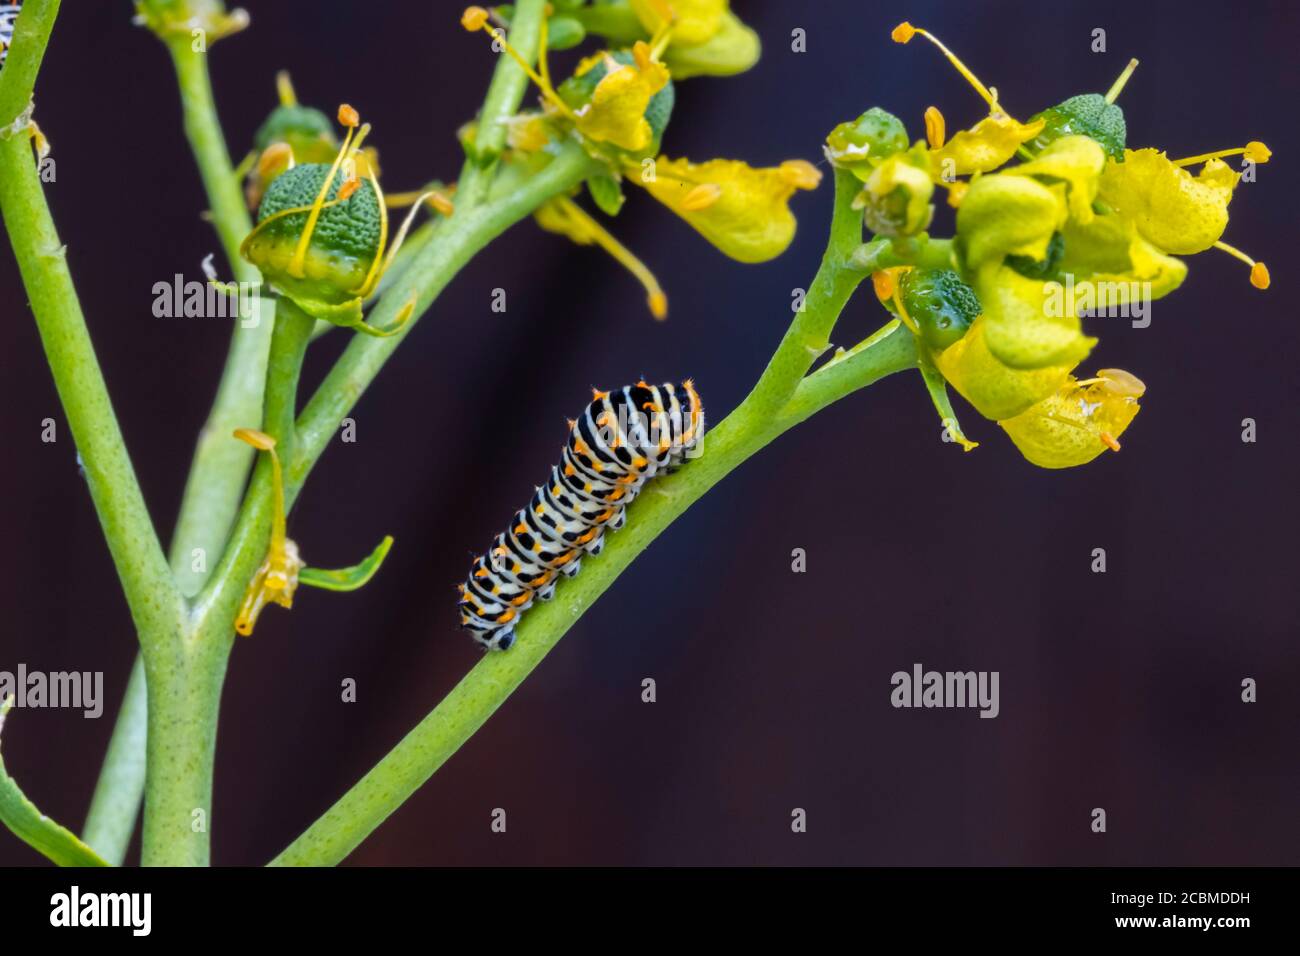 Old World swallowtail caterpillar (Papilio machaon). Stock Photo